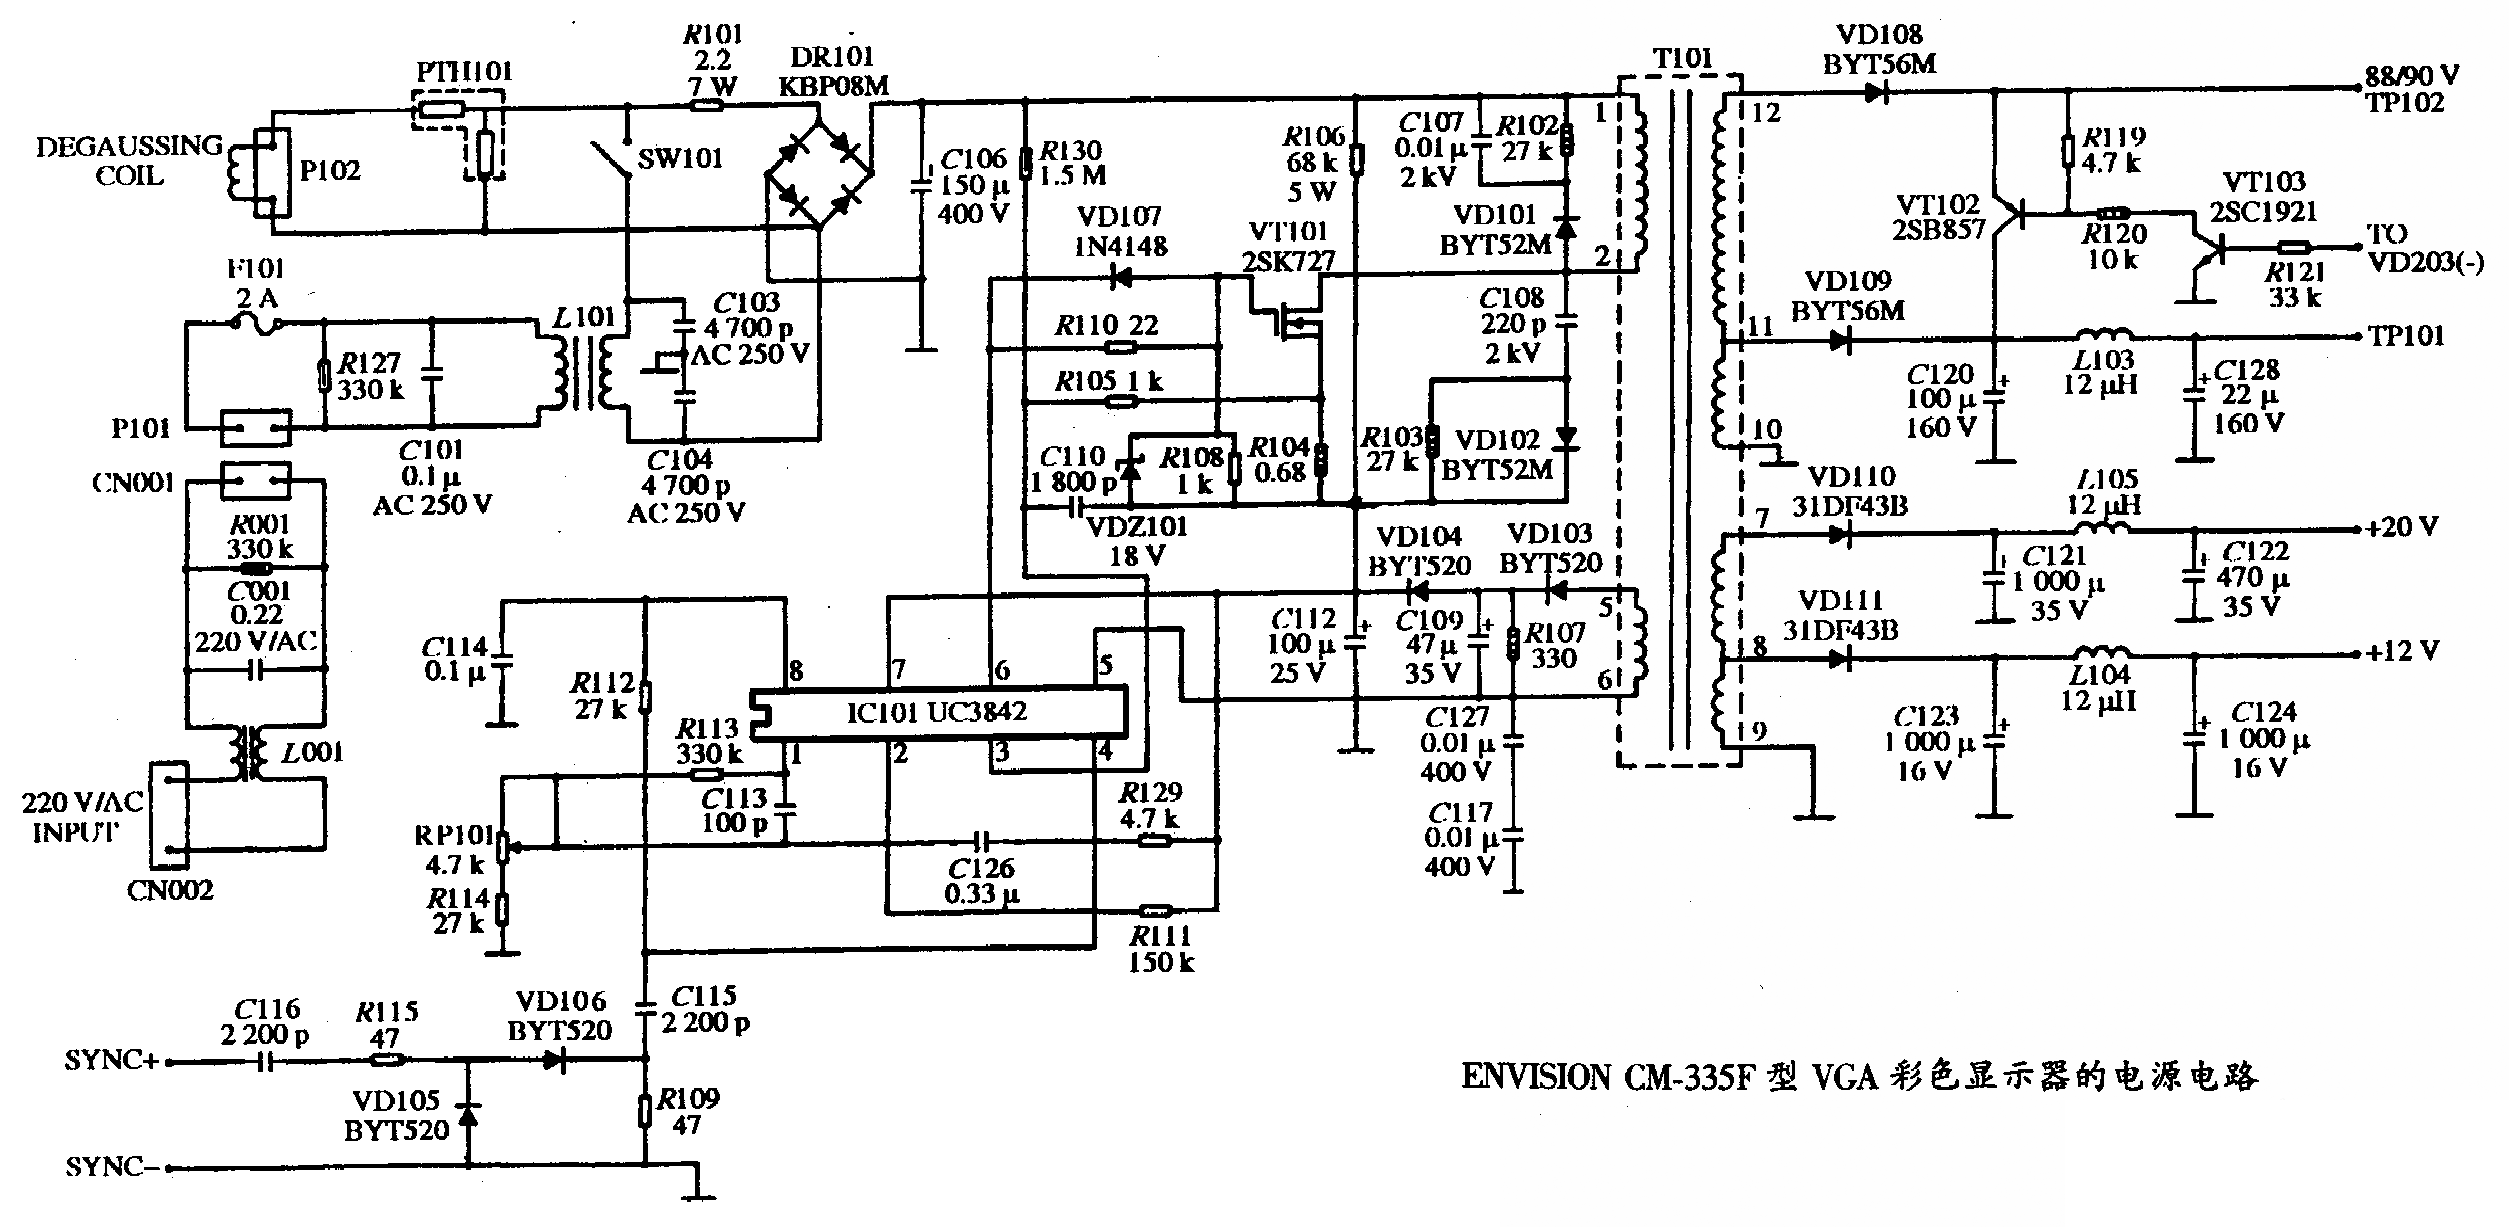 ENVISION CM-335F型VGA彩色显示器的电源电路图